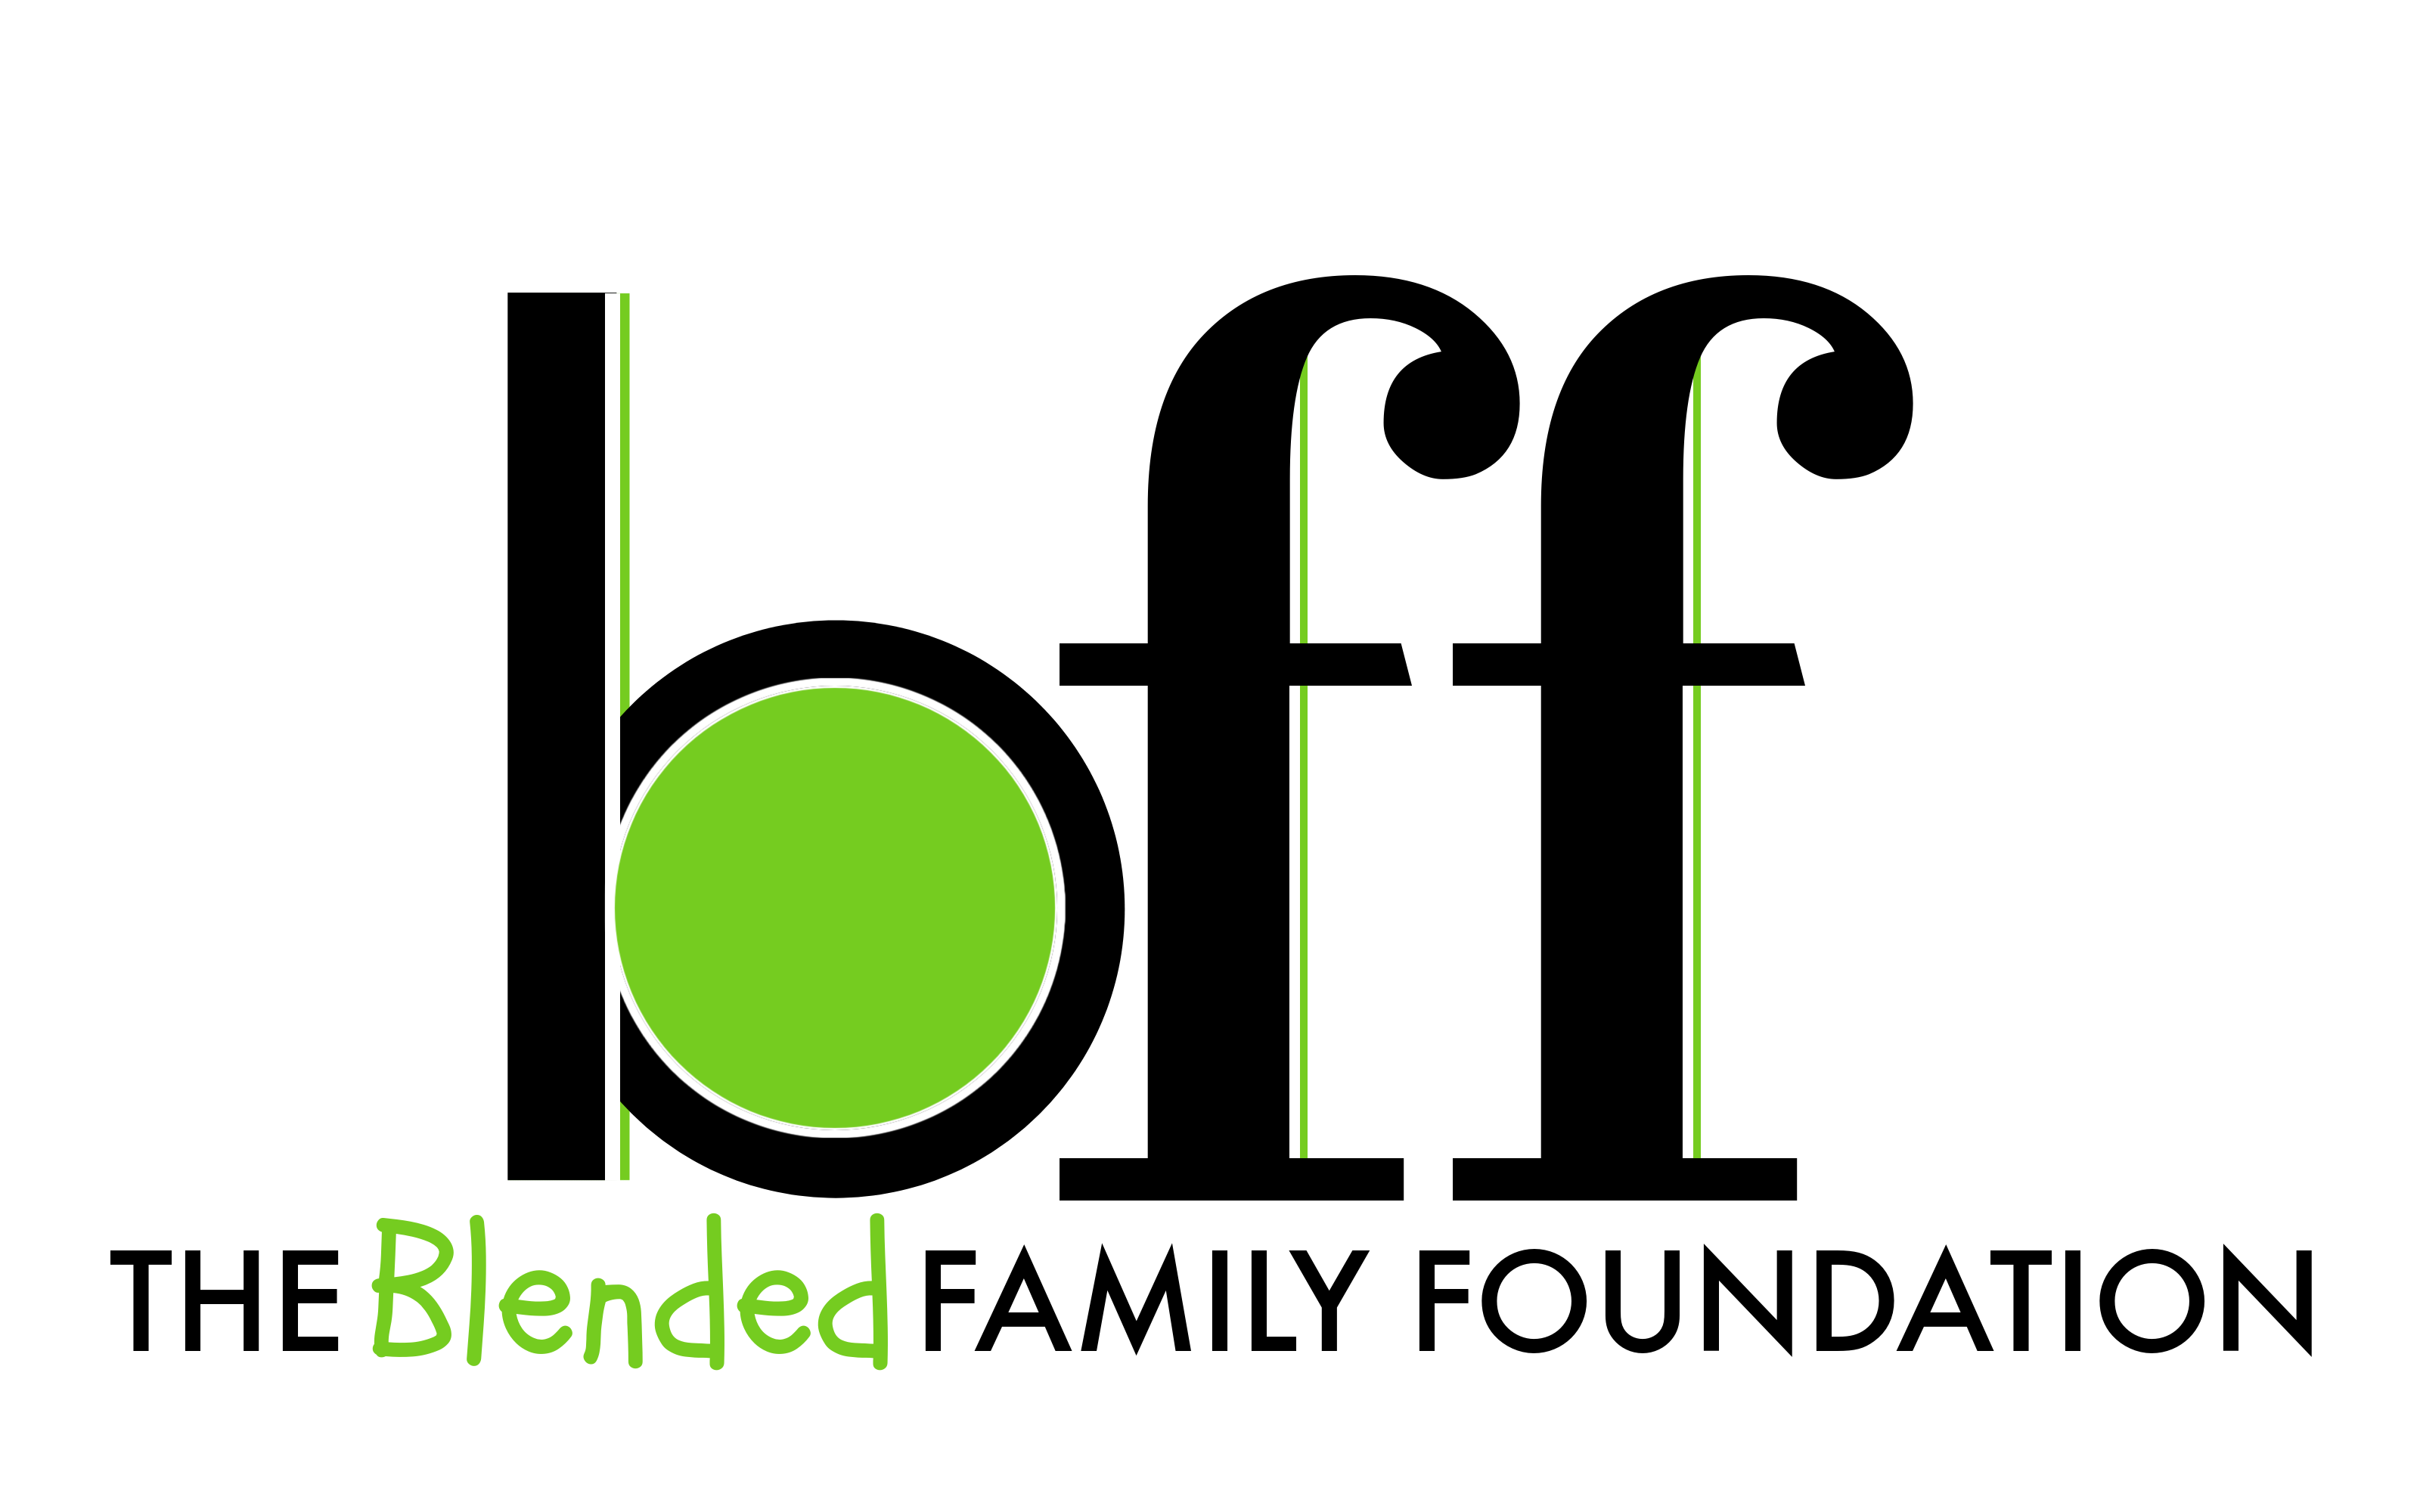 The Blended Family Foundation logo